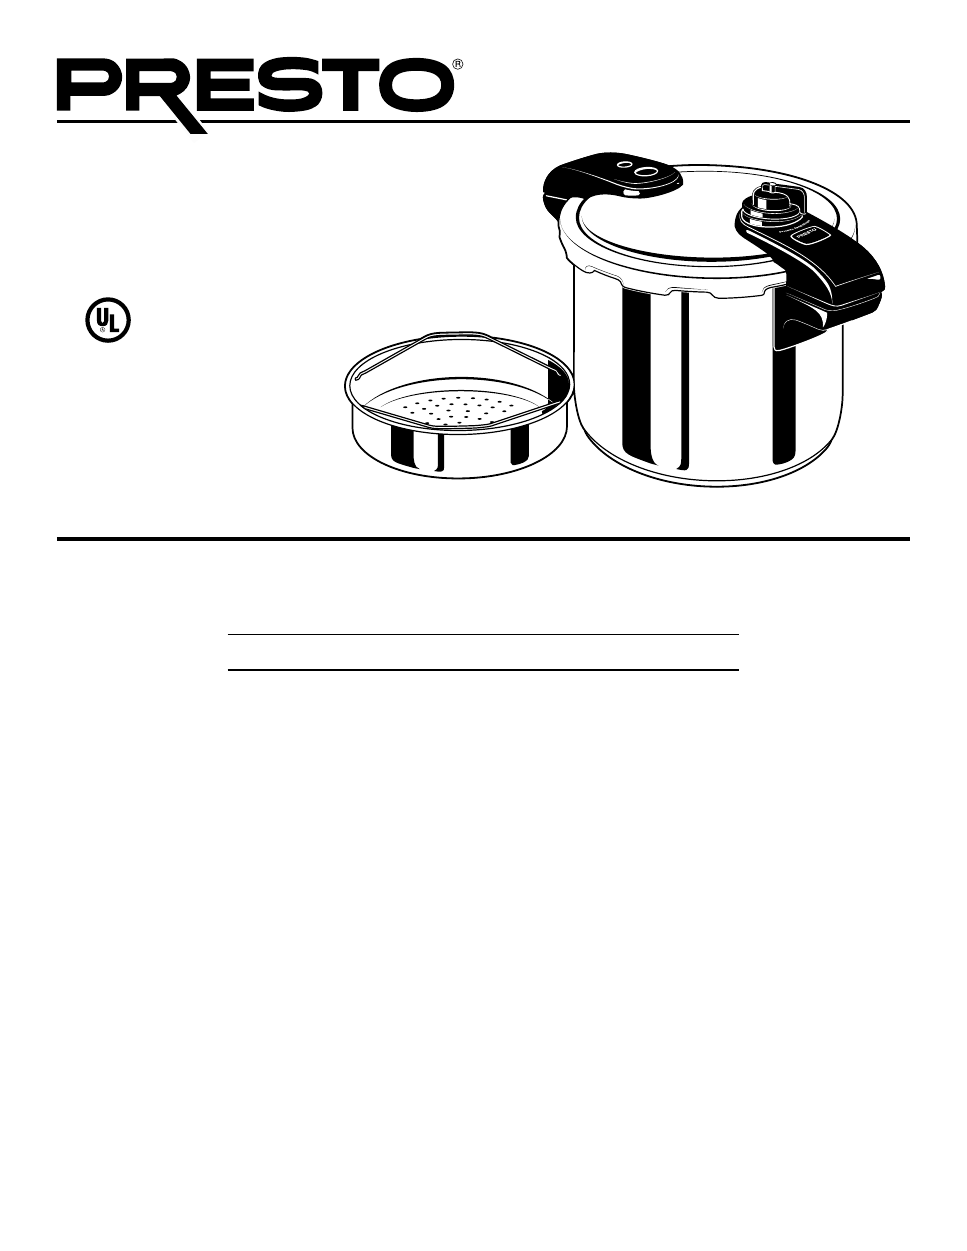 Presto Electric Pressure Cooker User Manual